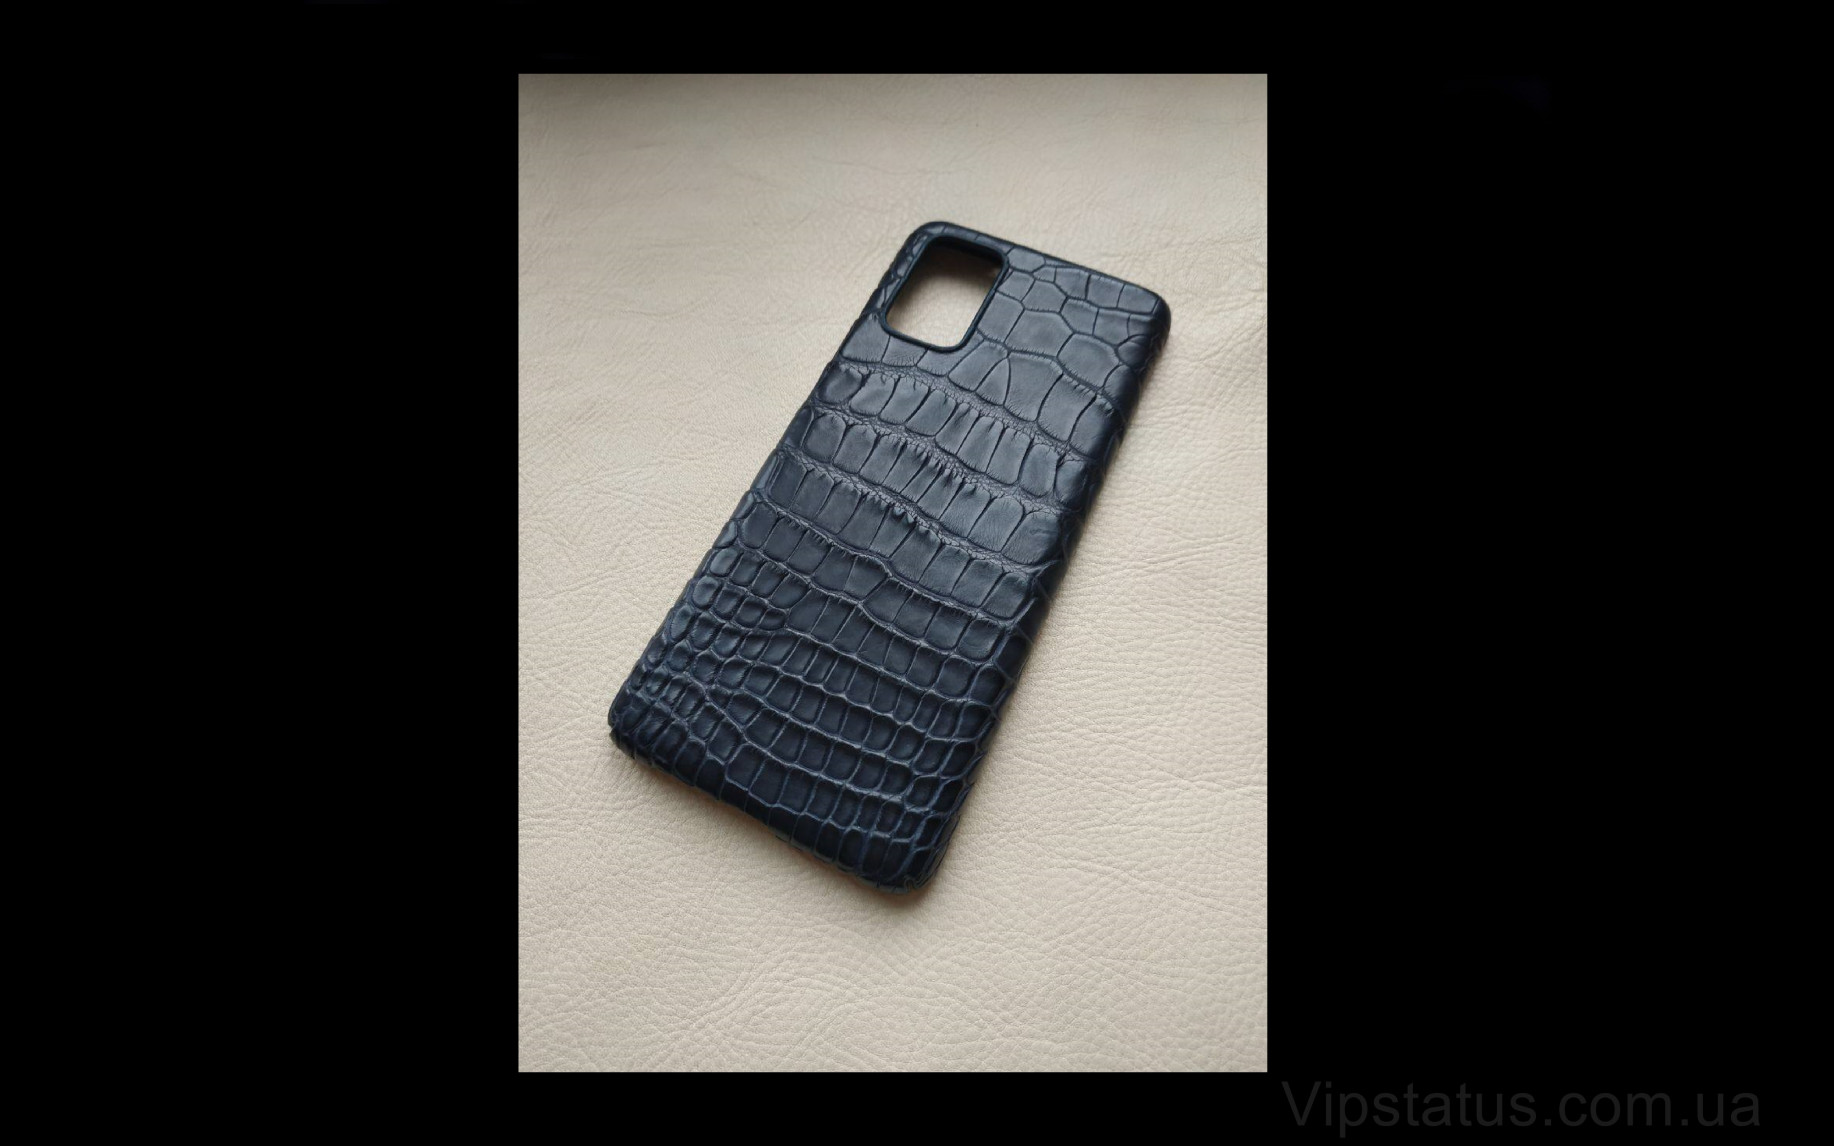 Elite Black Night Премиум чехол Samsung S20 S21 Plus кожа крокодила Black Night Premium case Samsung S20 S21 Plus Crocodile leather image 1